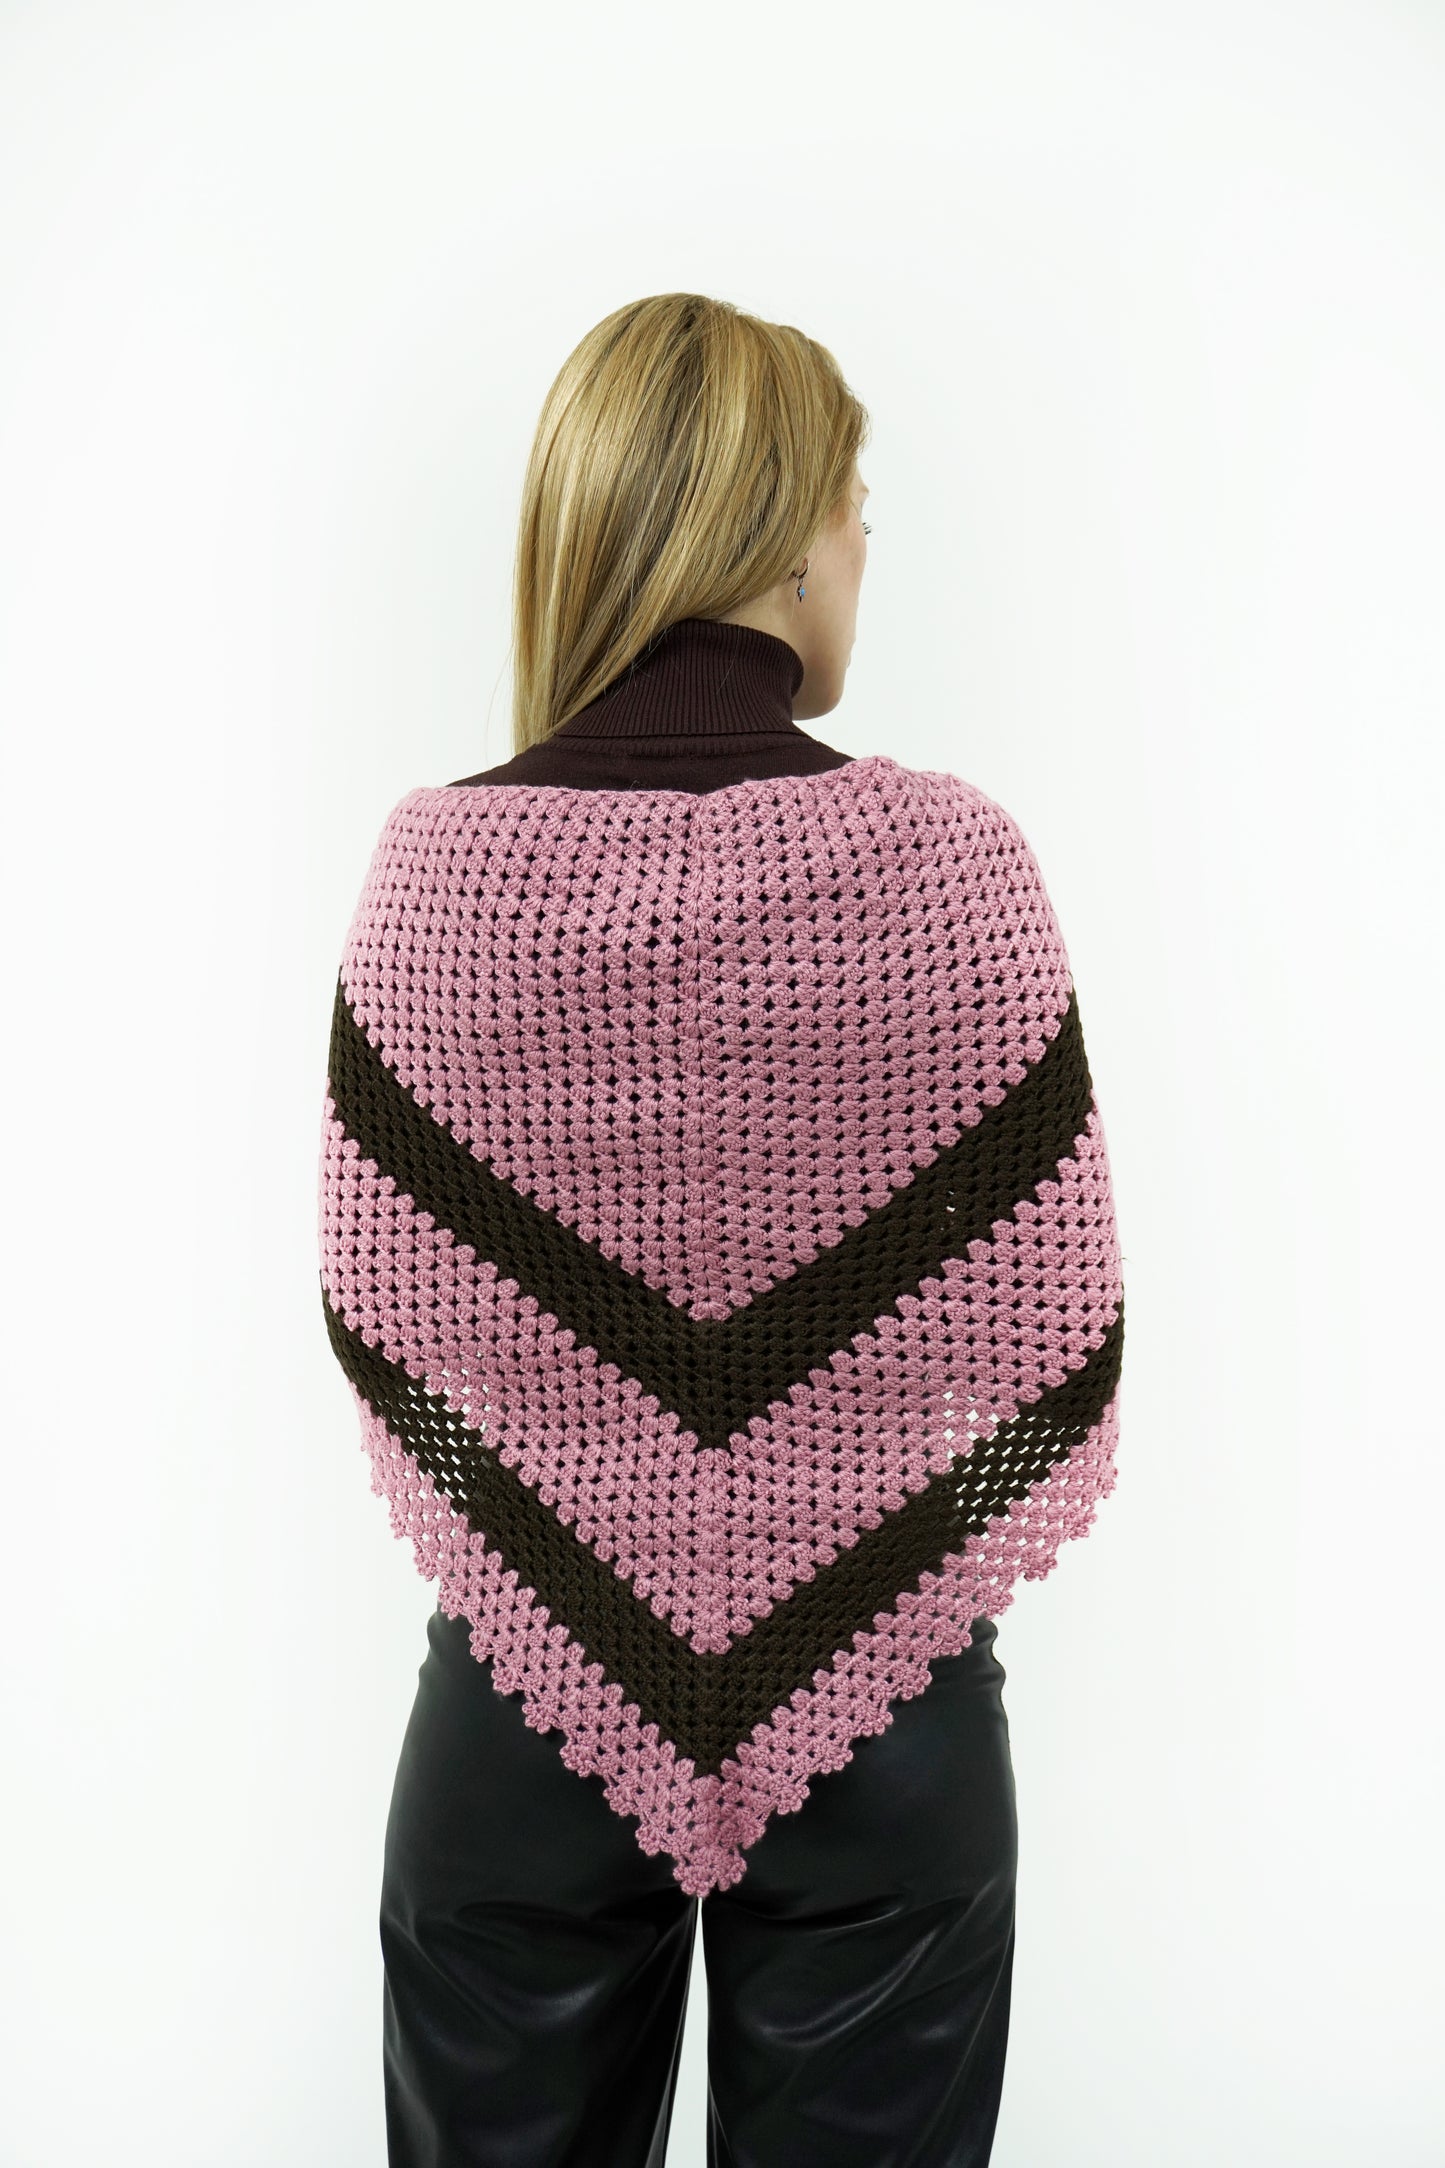 raquel crochet shawl back view